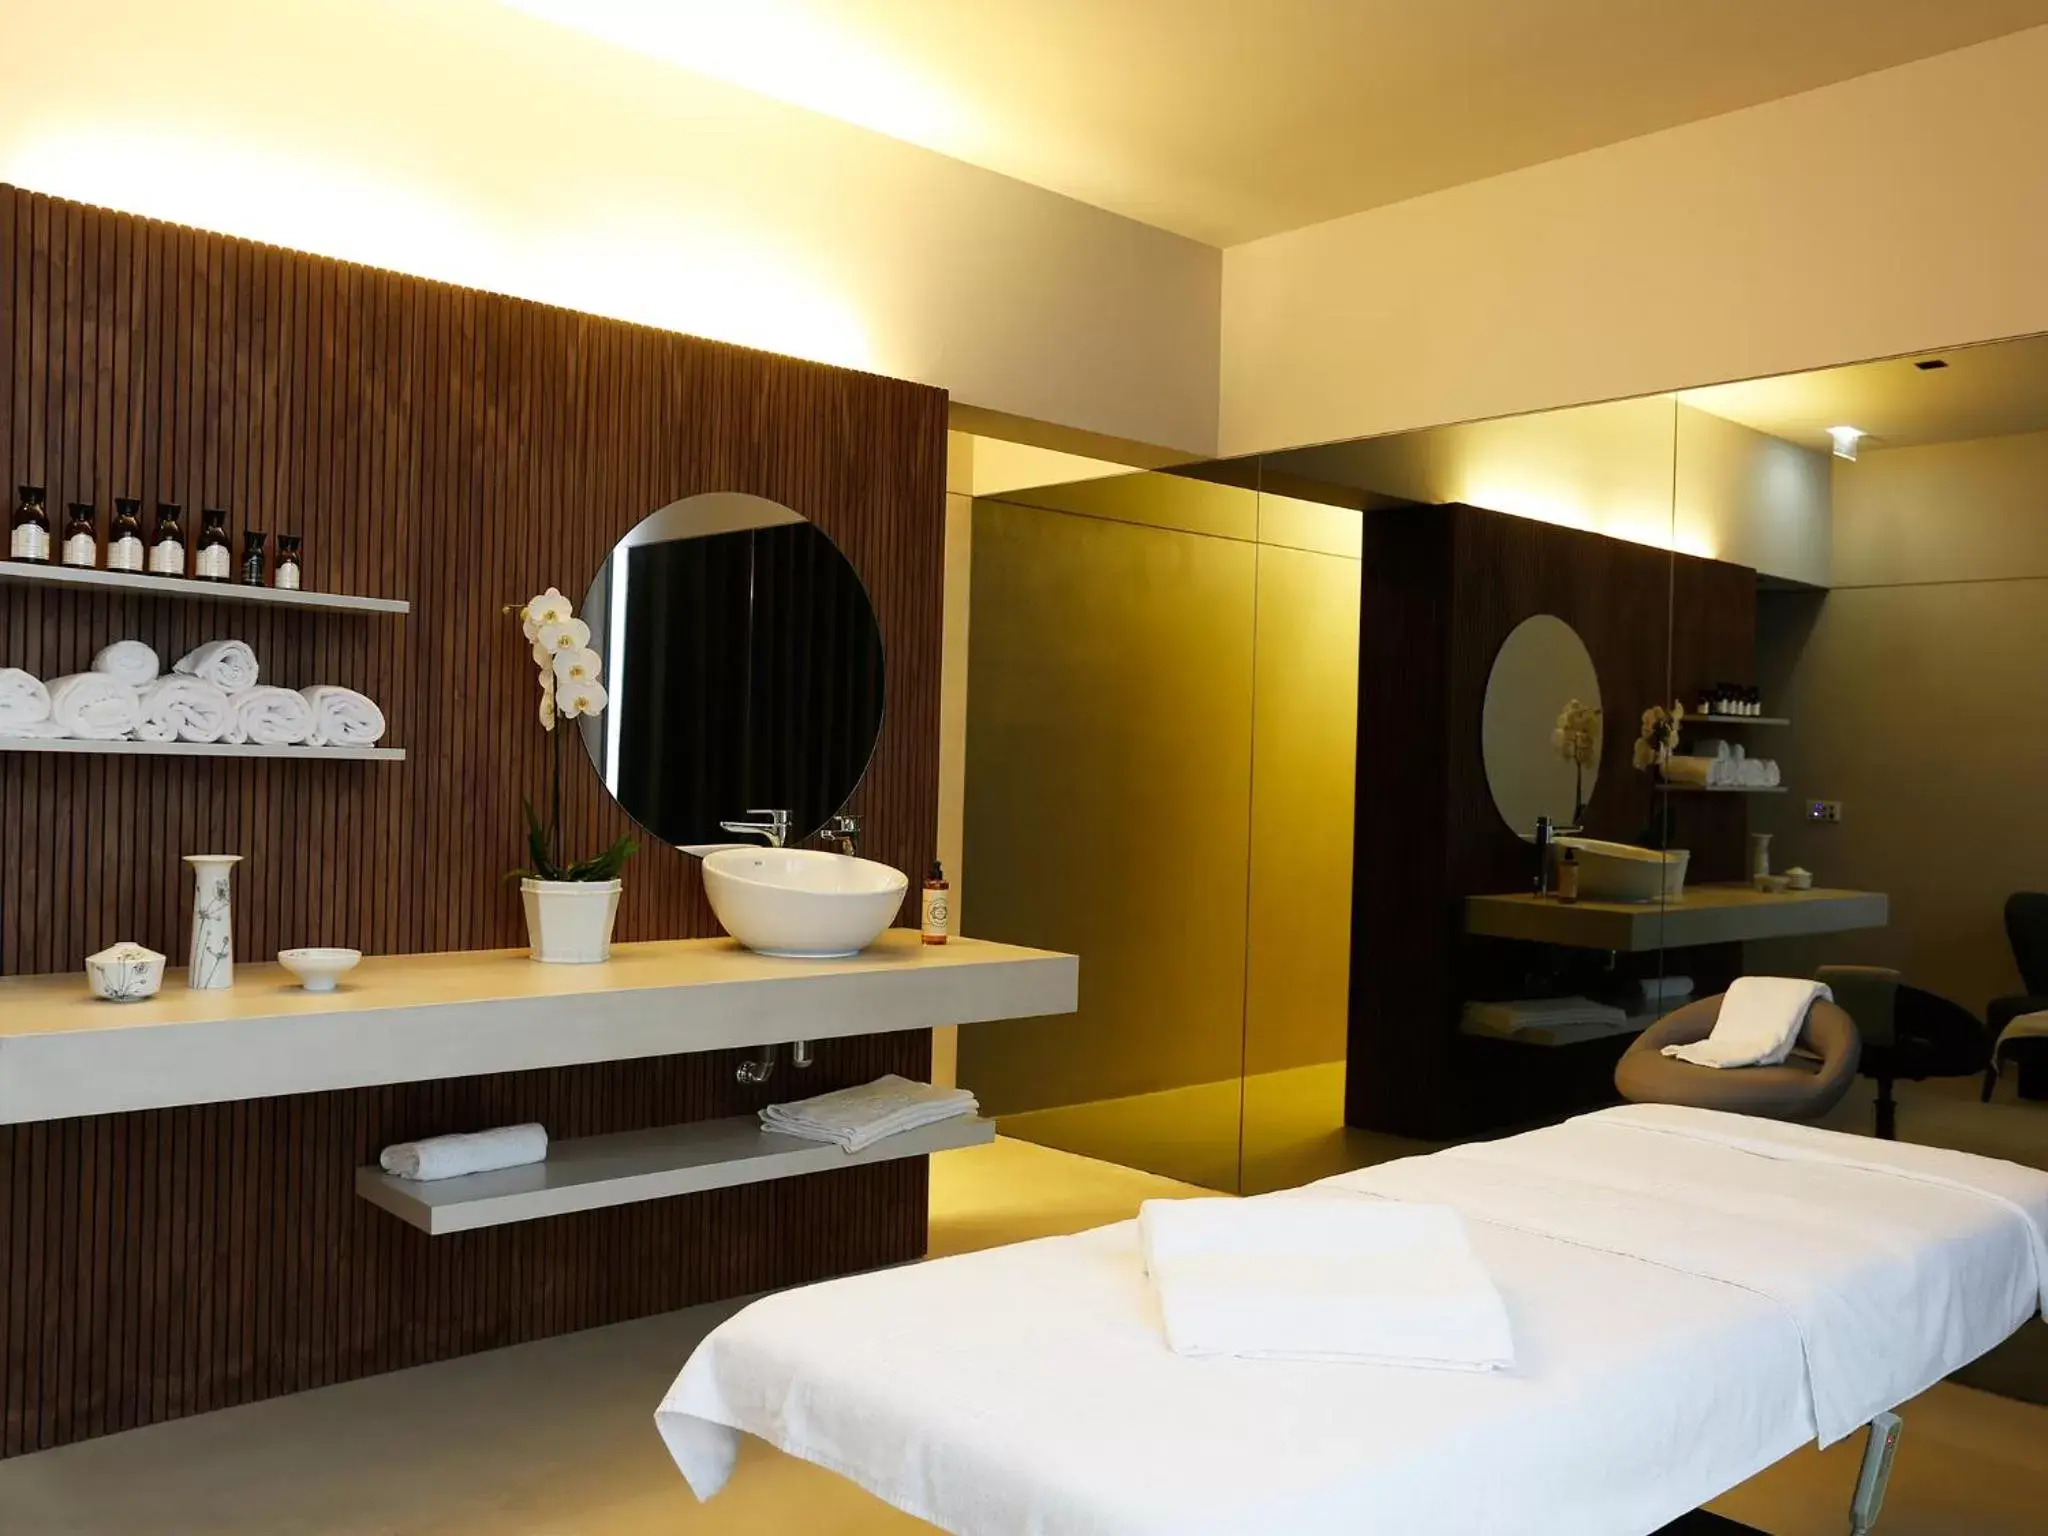 Spa and wellness centre/facilities, Bathroom in Montebelo Vista Alegre Ílhavo Hotel